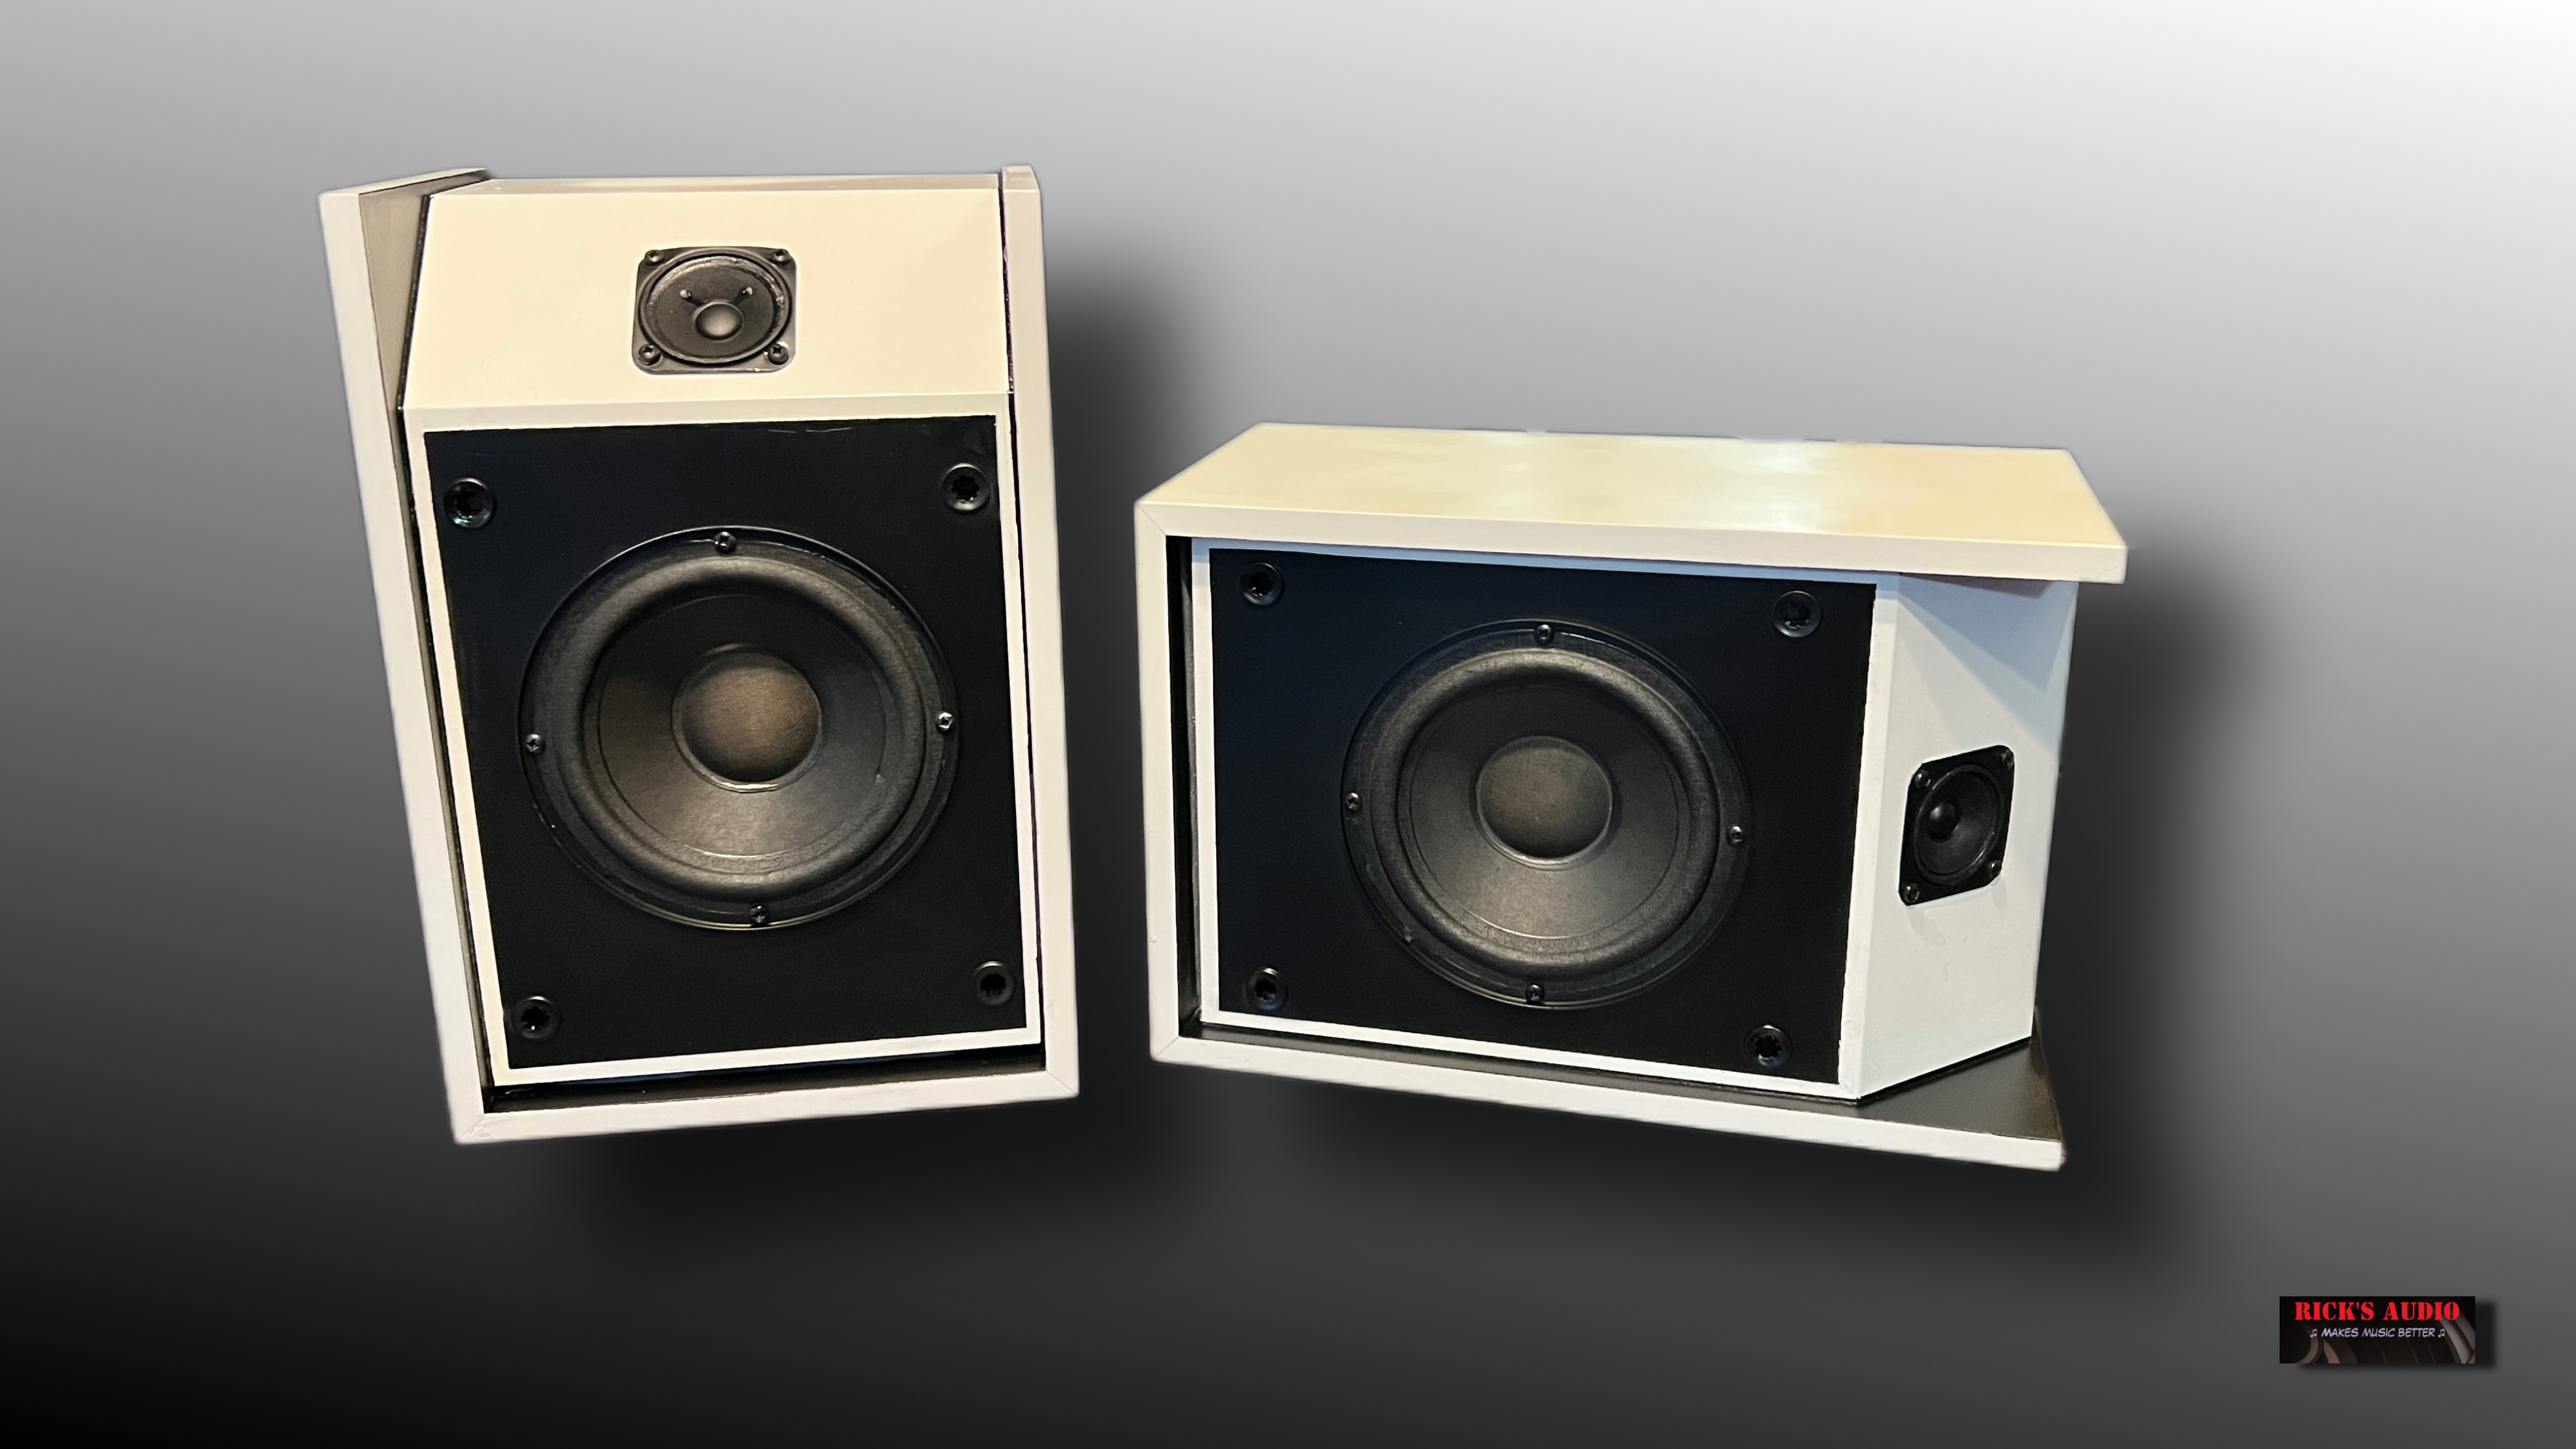 Bose - 201 series 3 - Speaker set - WIT